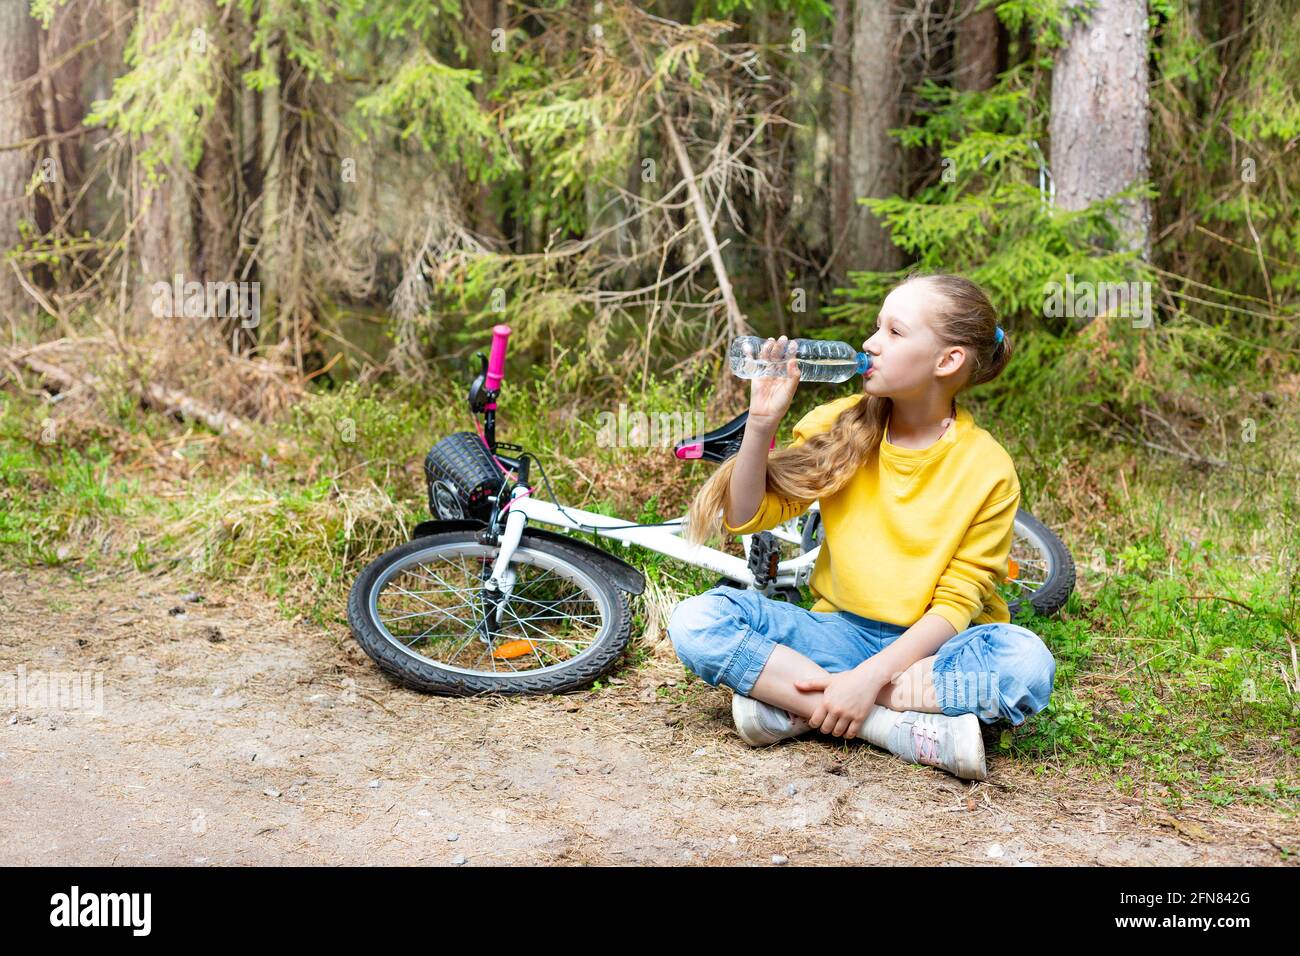 Una ragazza con una bicicletta si siede su un sentiero in un parco o in una foresta, beve acqua da una bottiglia. Foto Stock